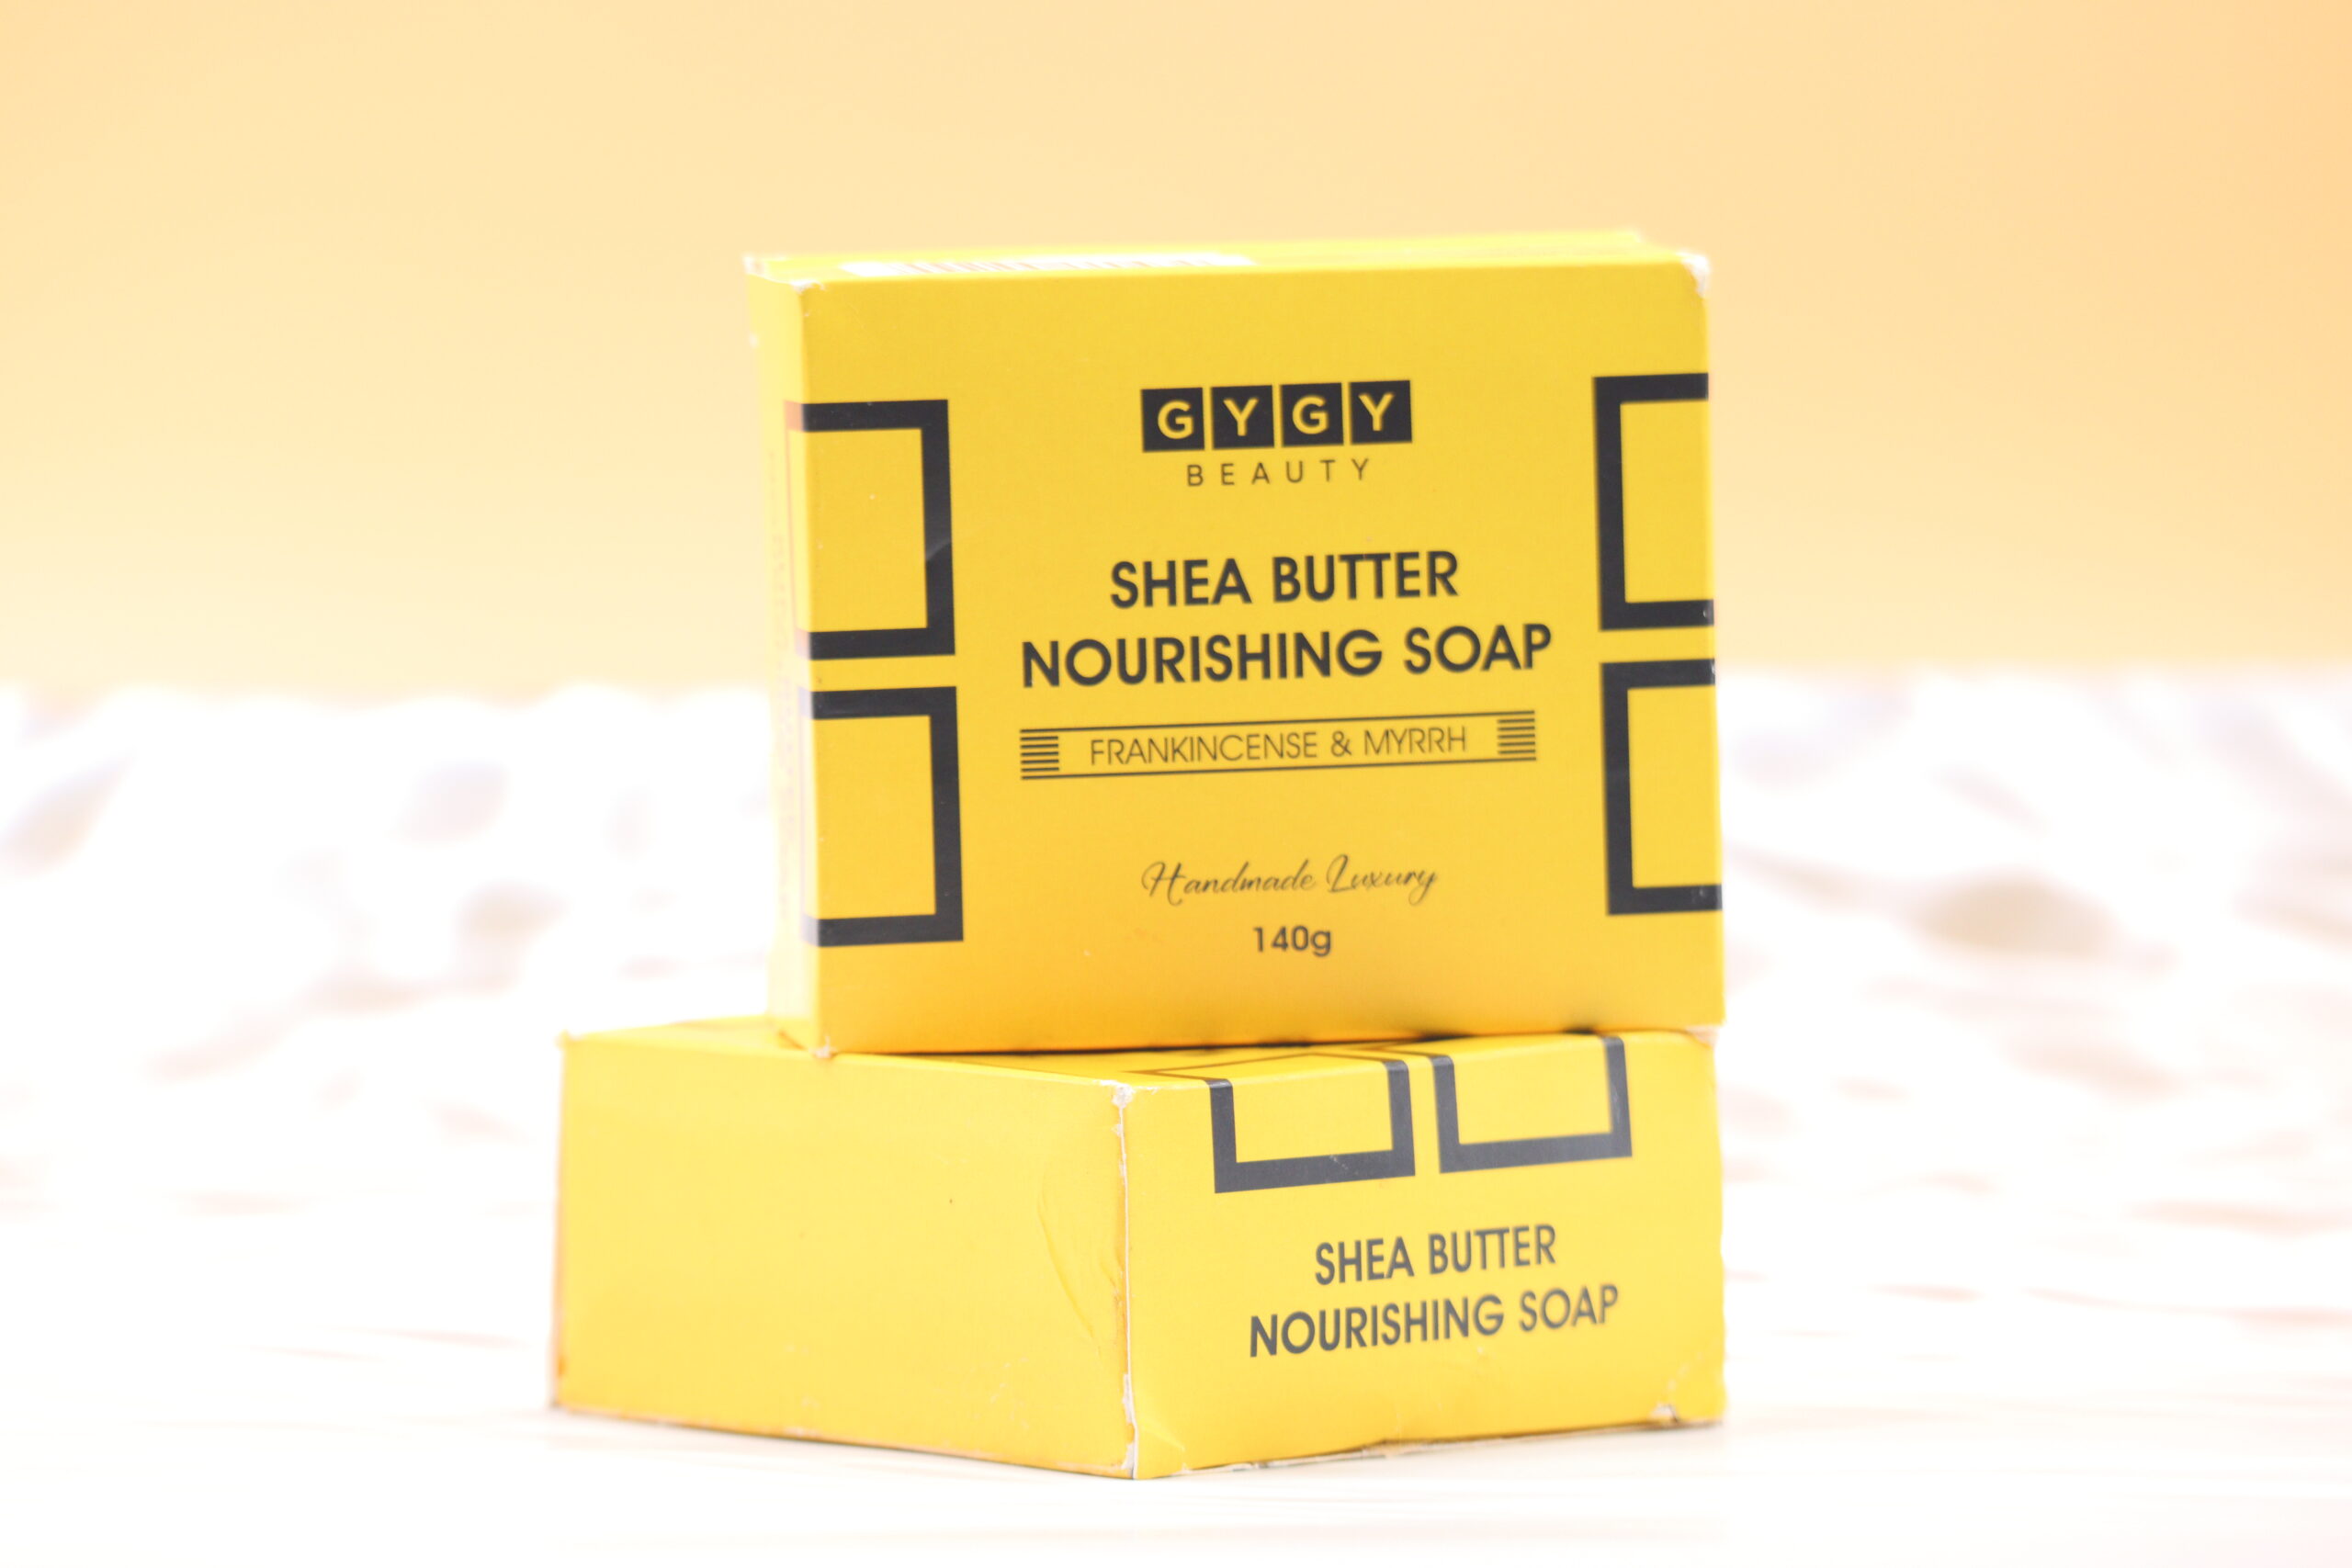 Shea Butter Nourishing Soap